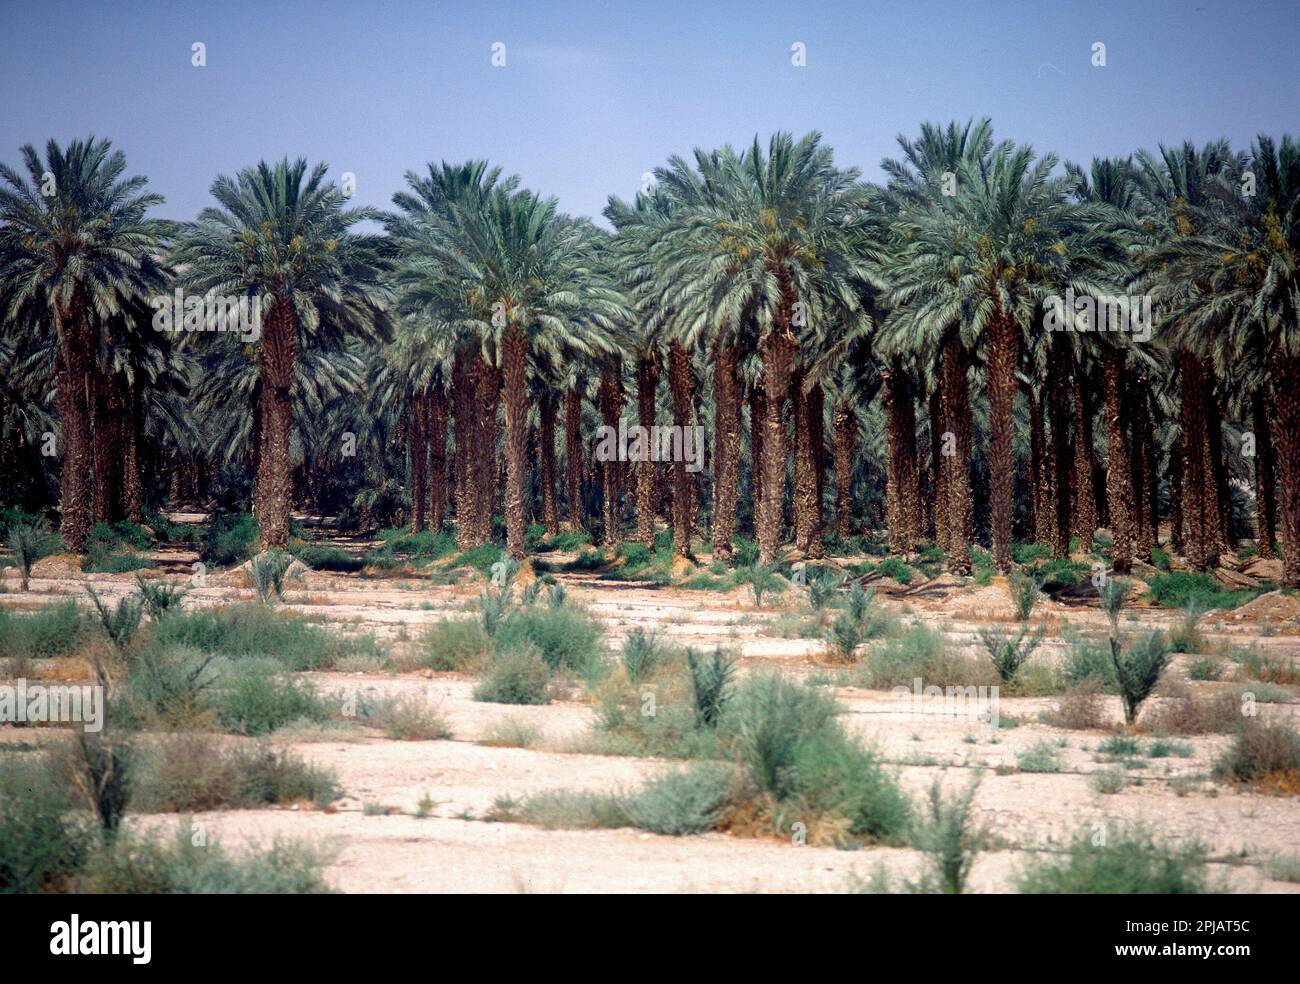 OASIS DE PALMERAS - FOTO AÑOS 90. Località: MAR MUERTO. Nación. ISRAELE. Foto Stock